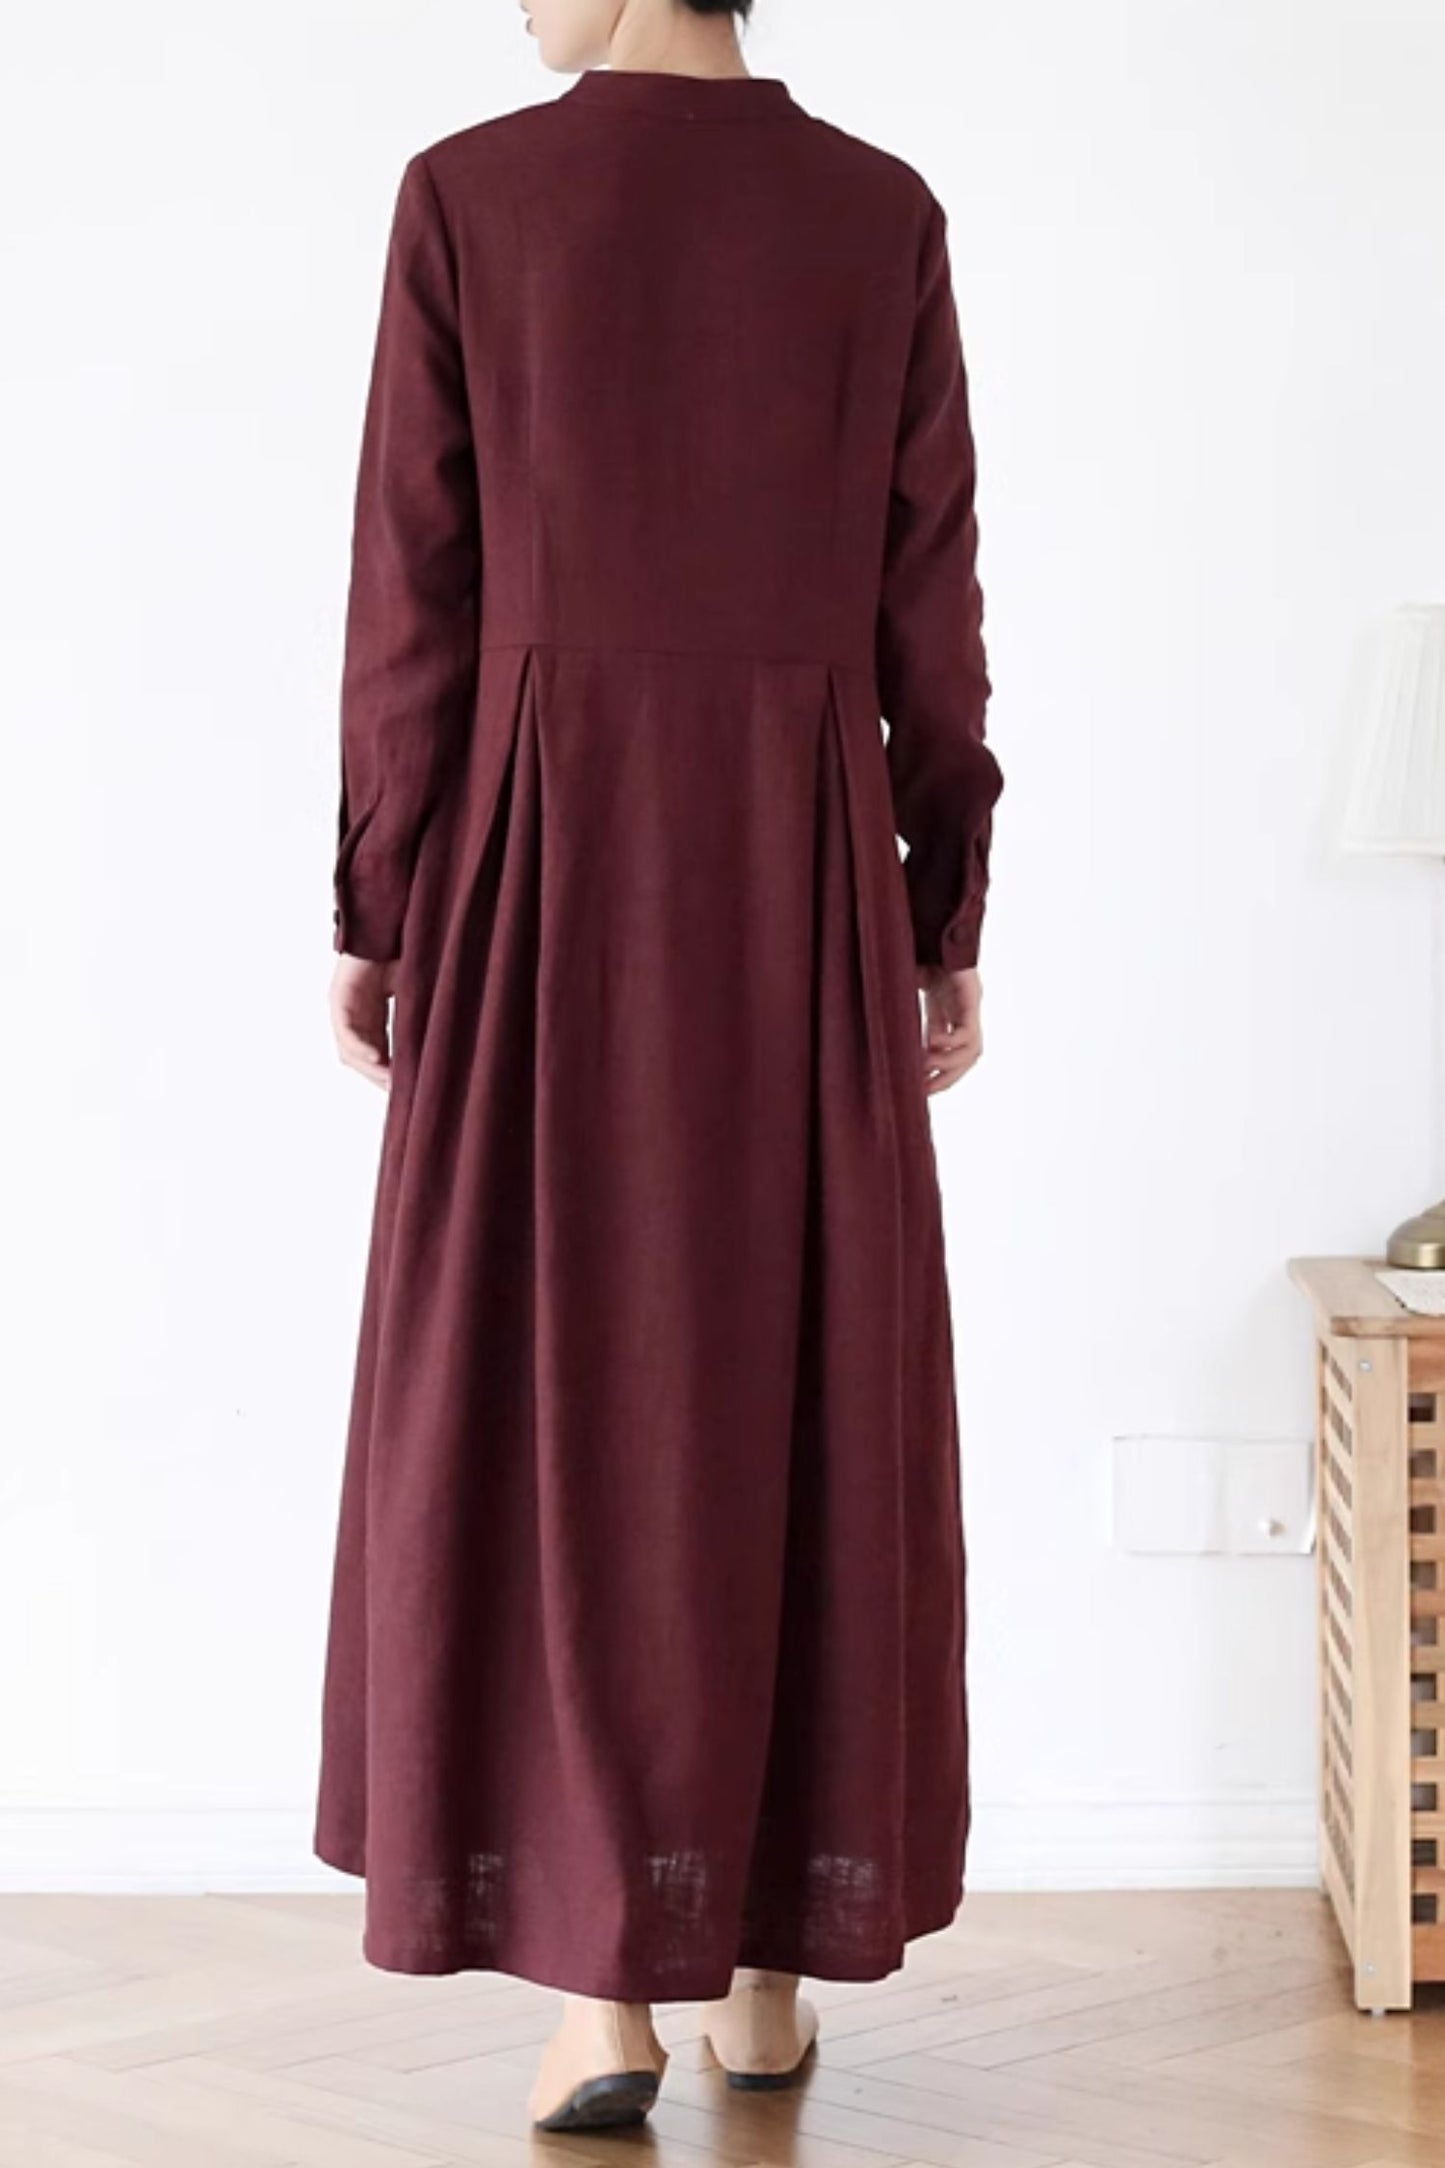 Vintage inspired long sleeves linen dress women 4825